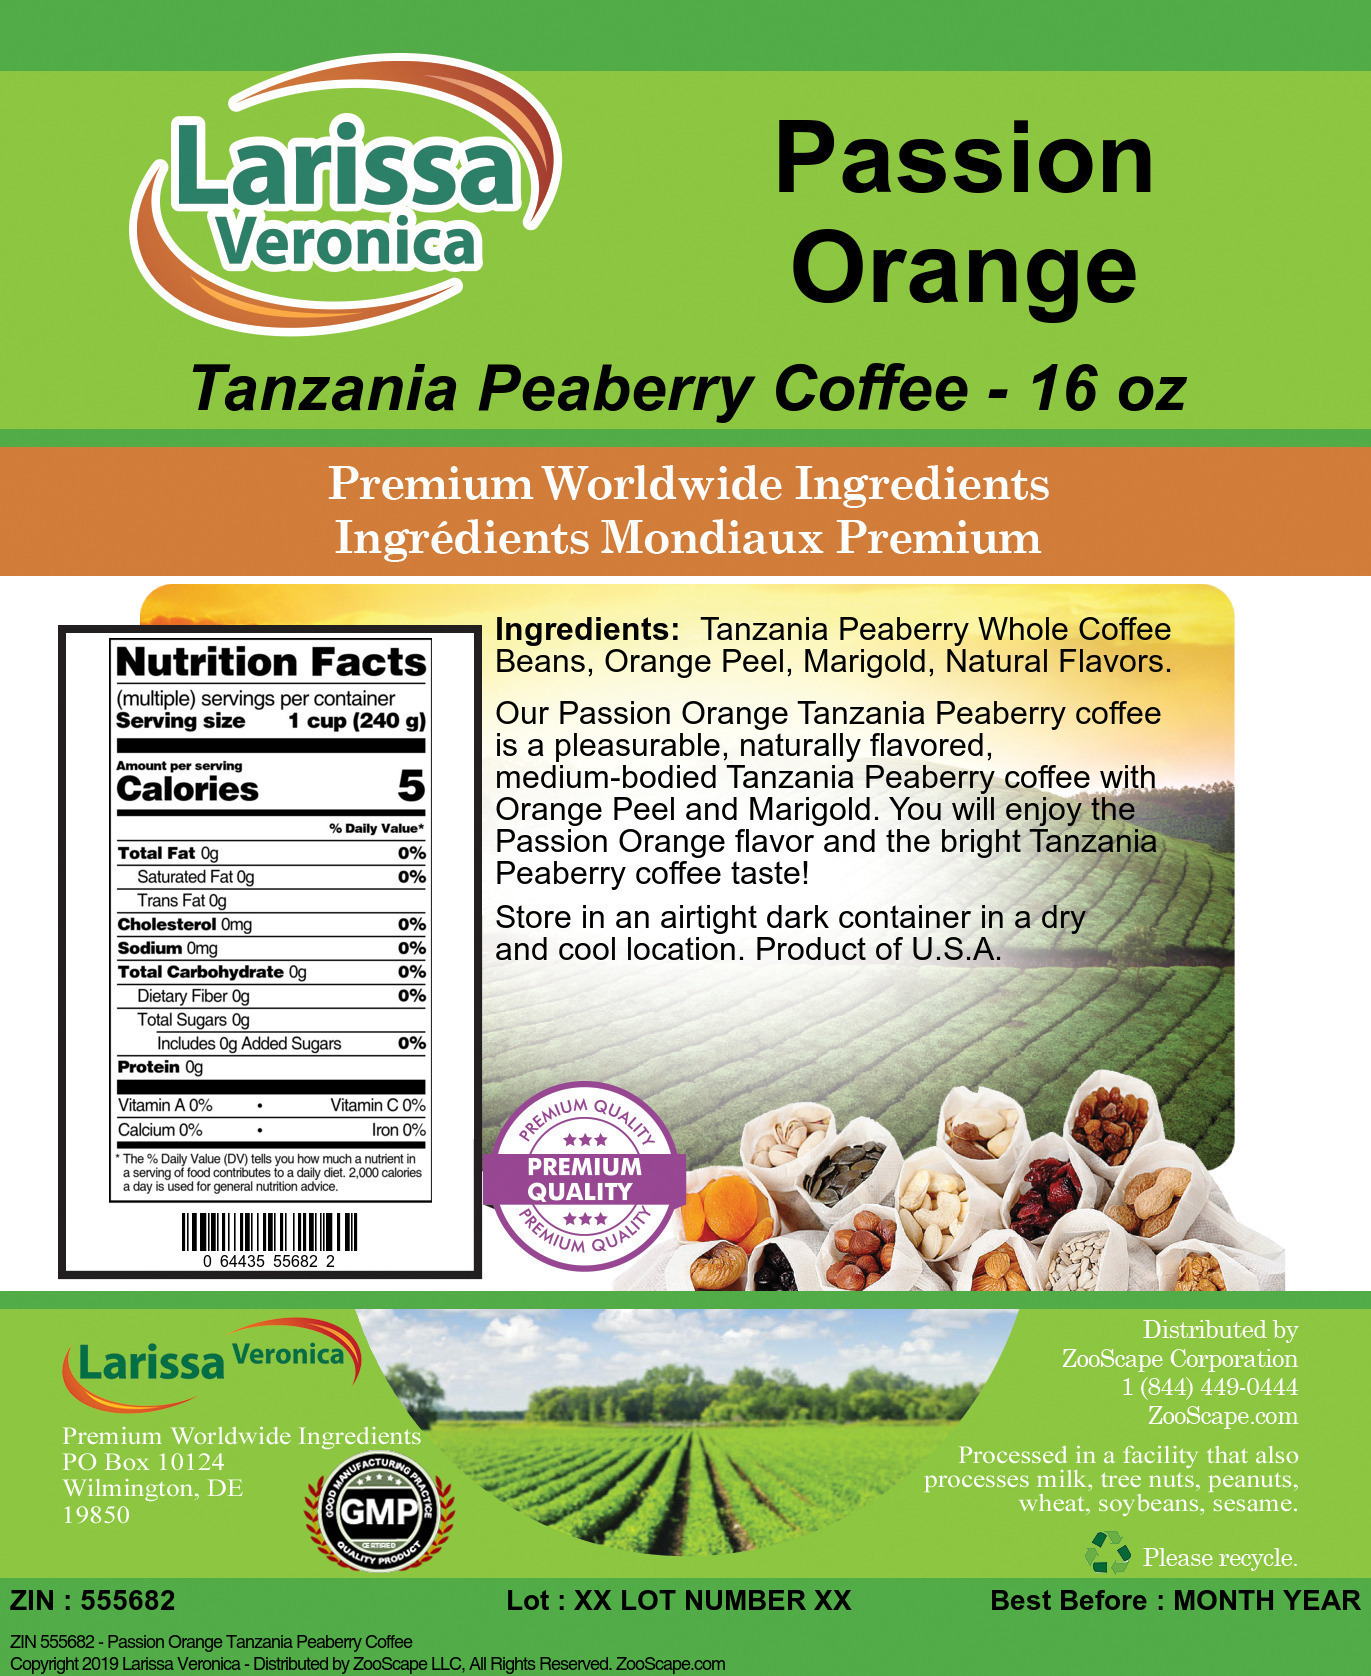 Passion Orange Tanzania Peaberry Coffee - Label